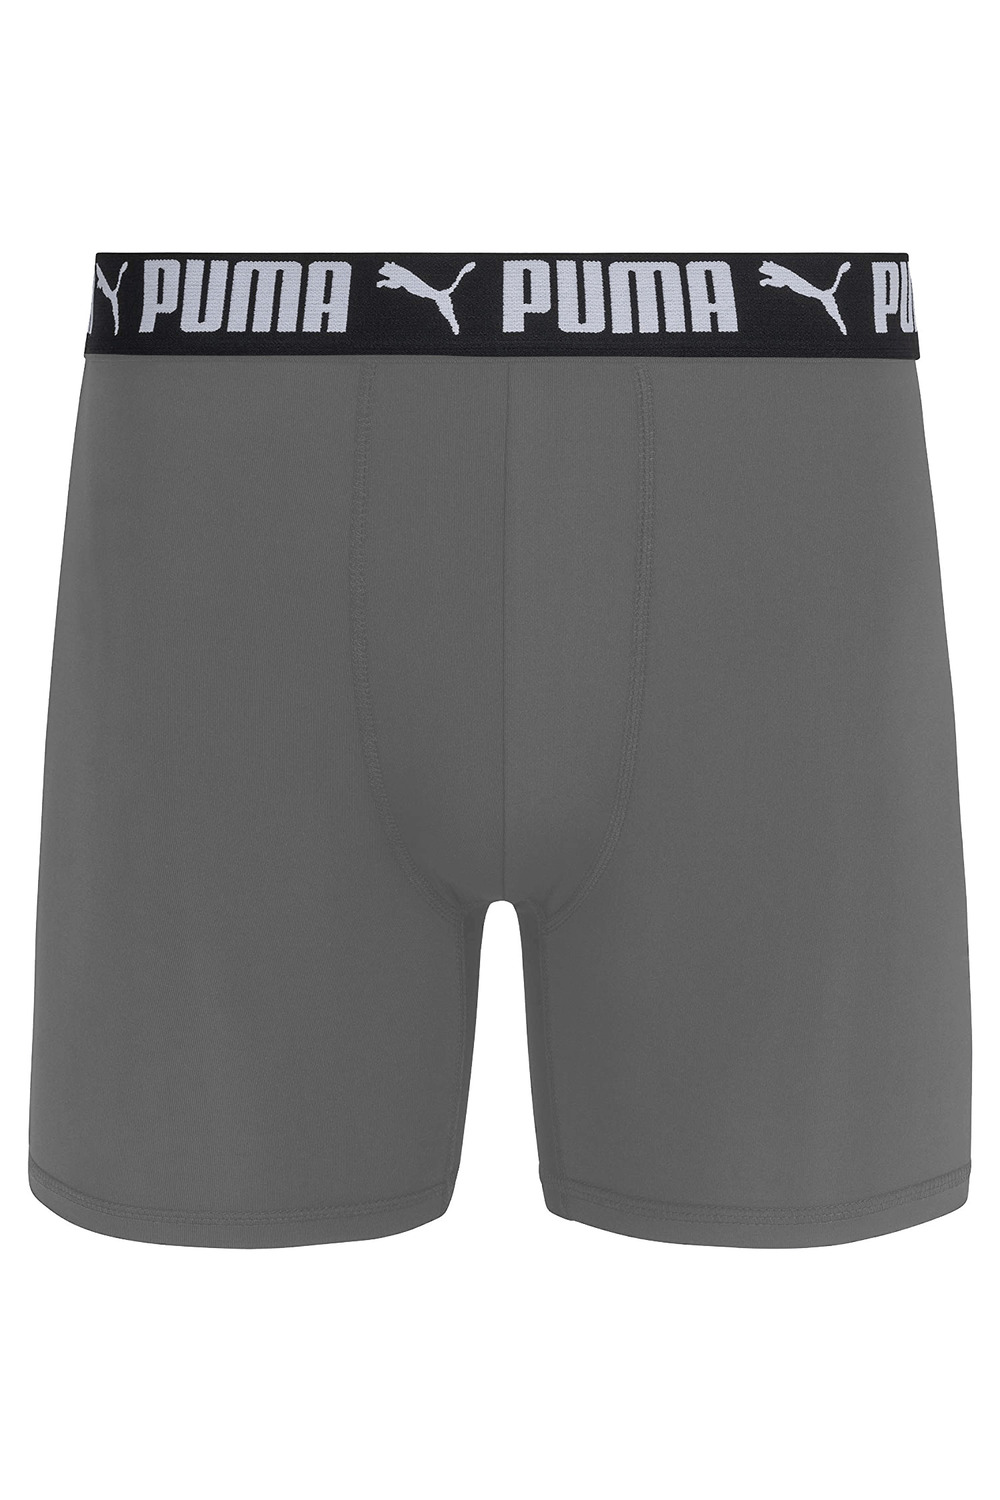 PUMA - Men's athletic fit performance boxer briefs, pk. of 3. Colour: navy  blue. Size: m